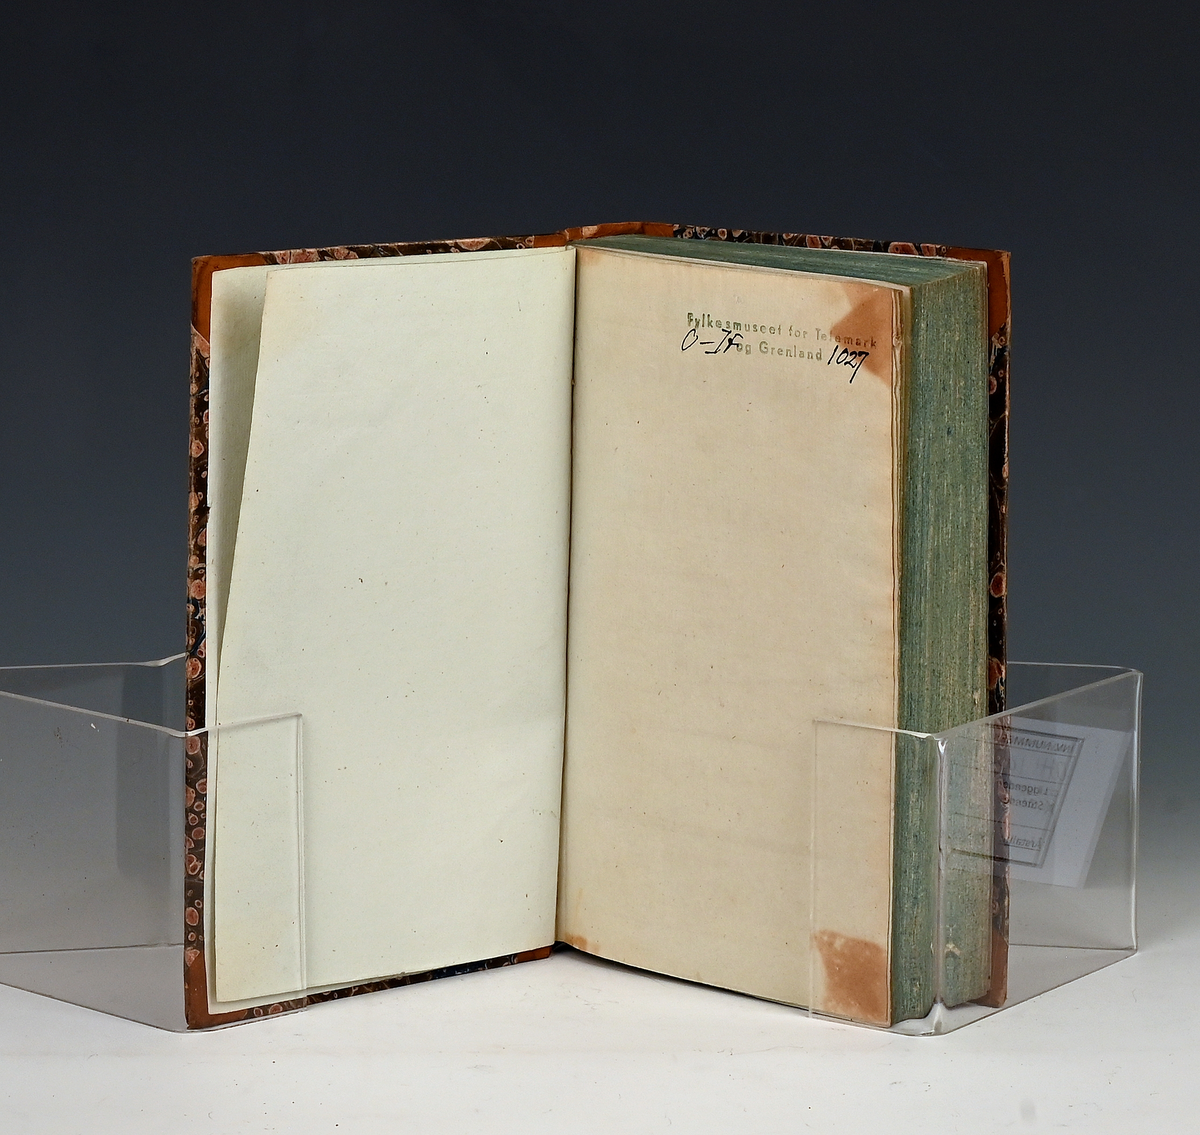 Maanedsskrift for litteratur. Tredie bind. Kbhv. 1830.